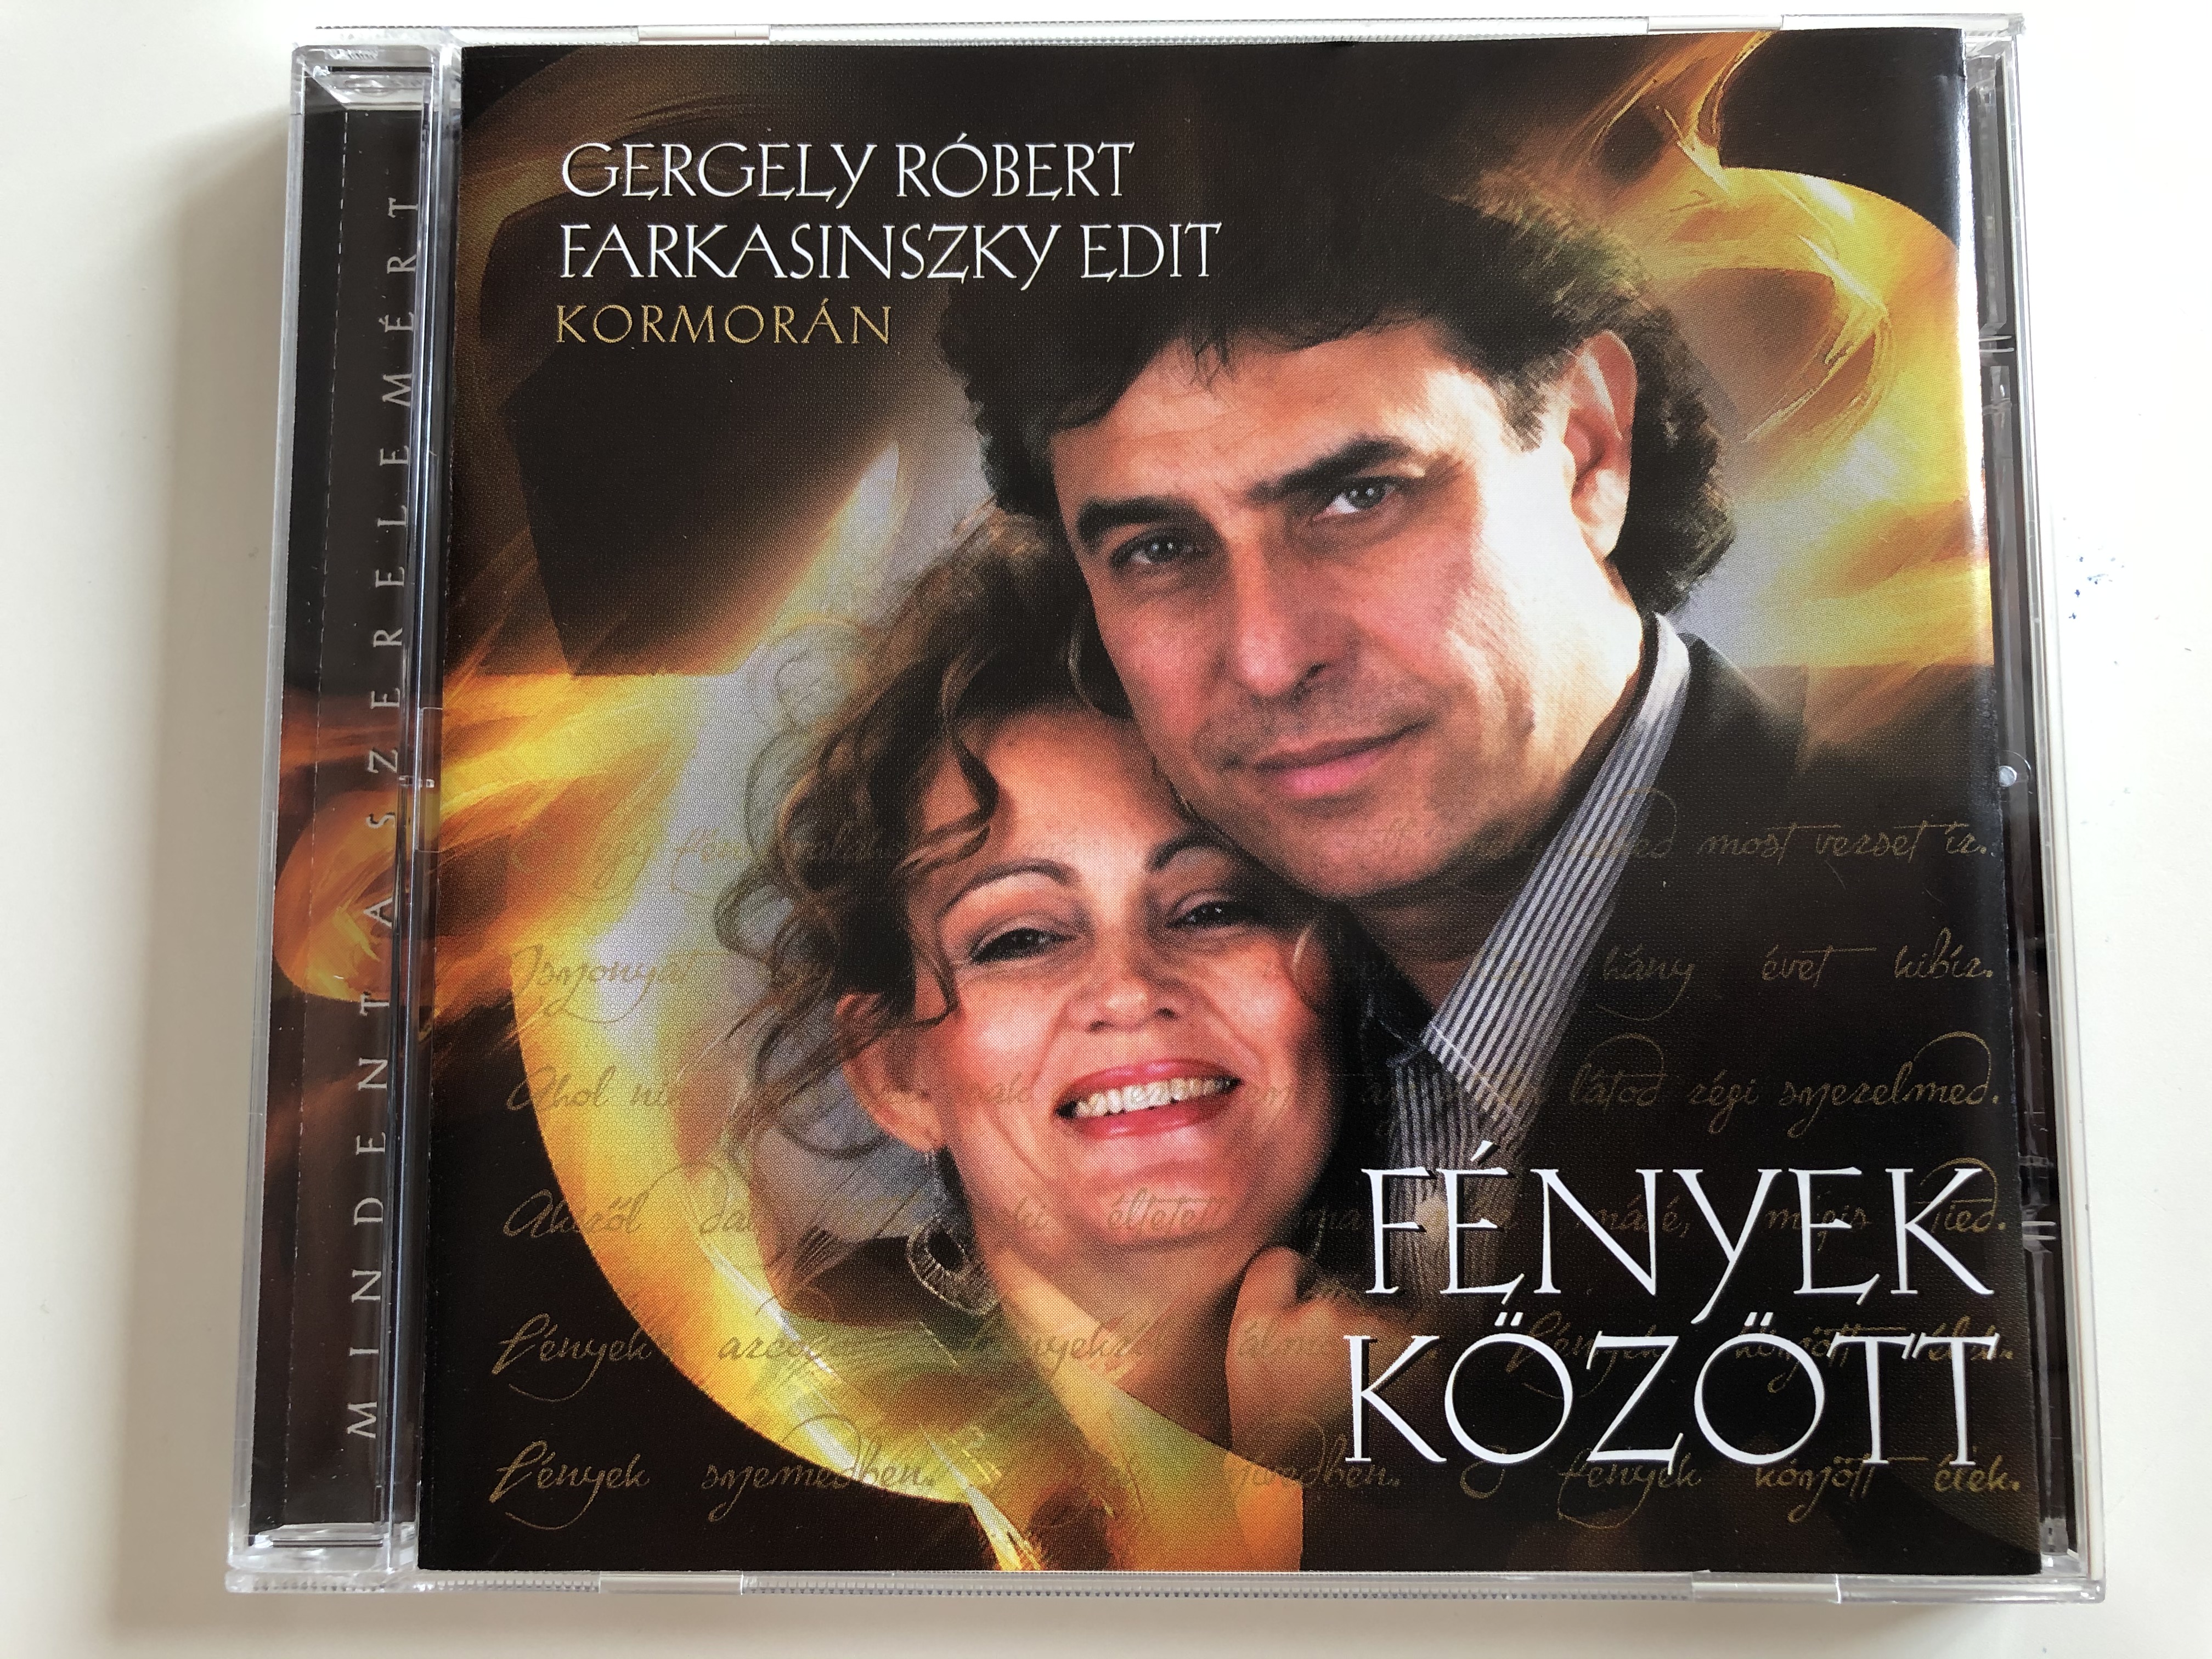 gergely-r-bert-farkasinszky-edit-kormor-n-f-nyek-k-z-tt-hungaroton-audio-cd-2009-hcd-71250-1-.jpg